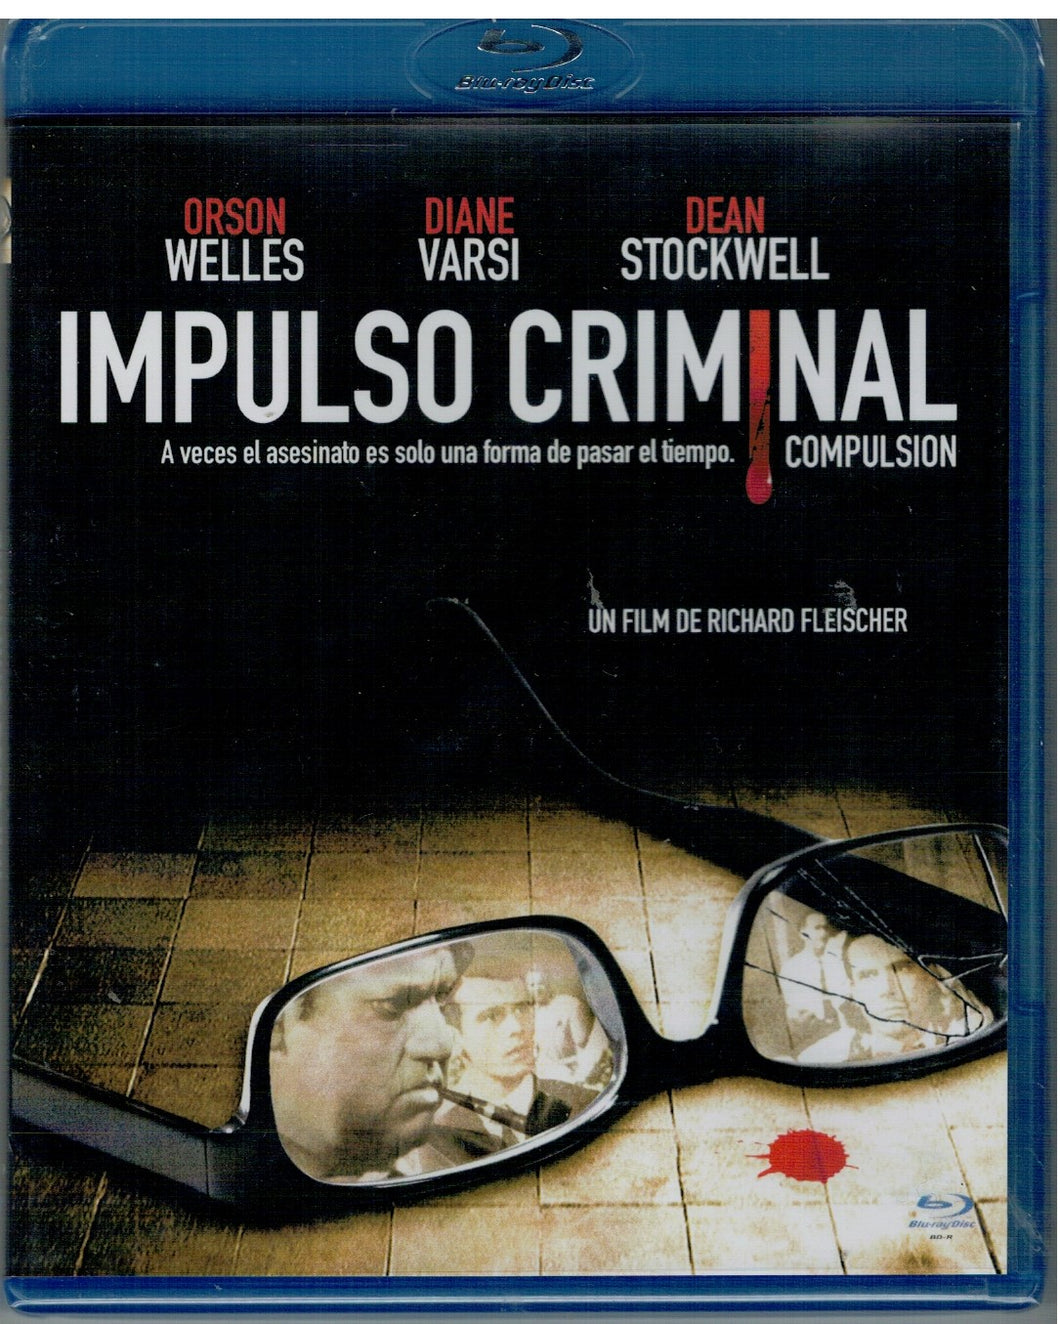 Impulso criminal (Compulsion) (Bluray Nuevo)